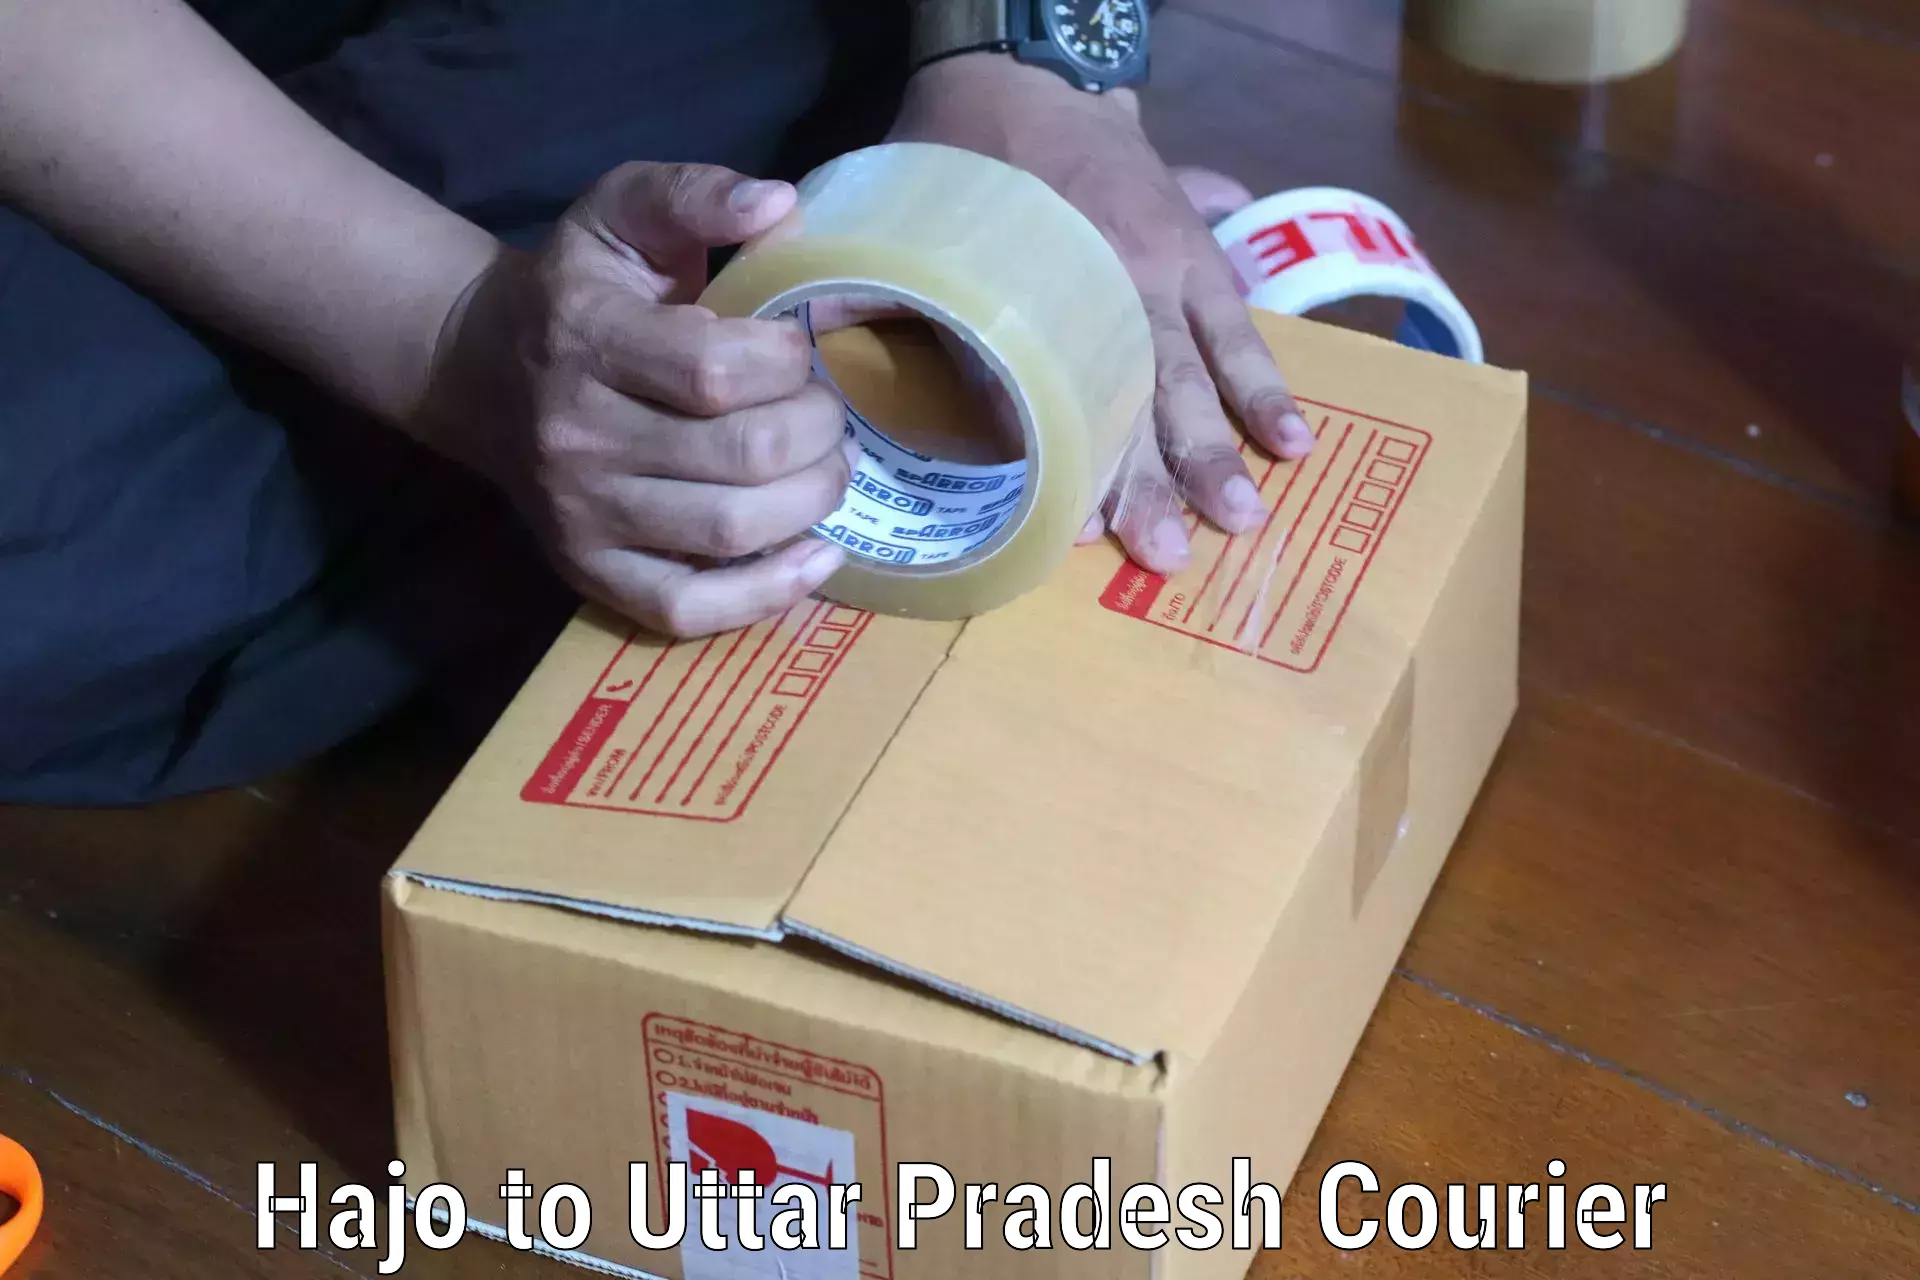 Efficient order fulfillment Hajo to Uttar Pradesh